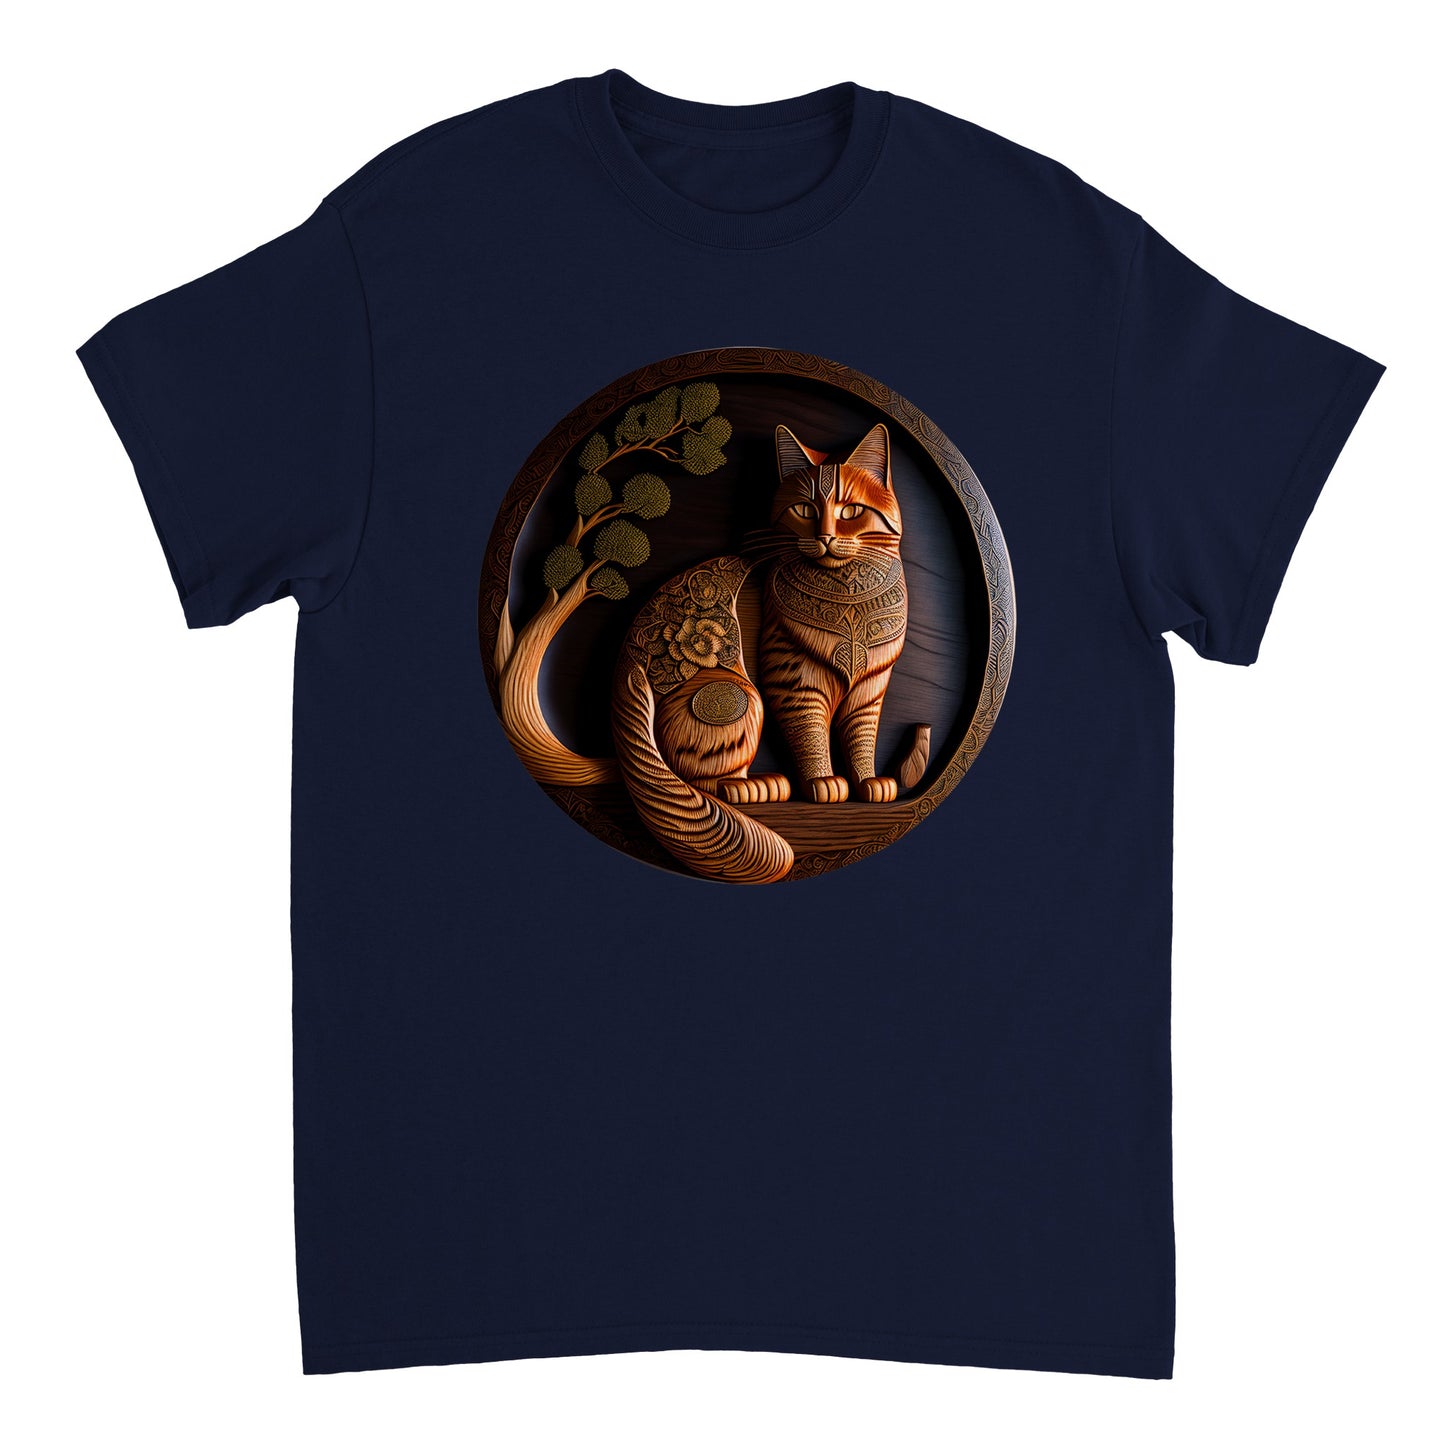 3D Wooden Animal Art - Heavyweight Unisex Crewneck T-shirt 40